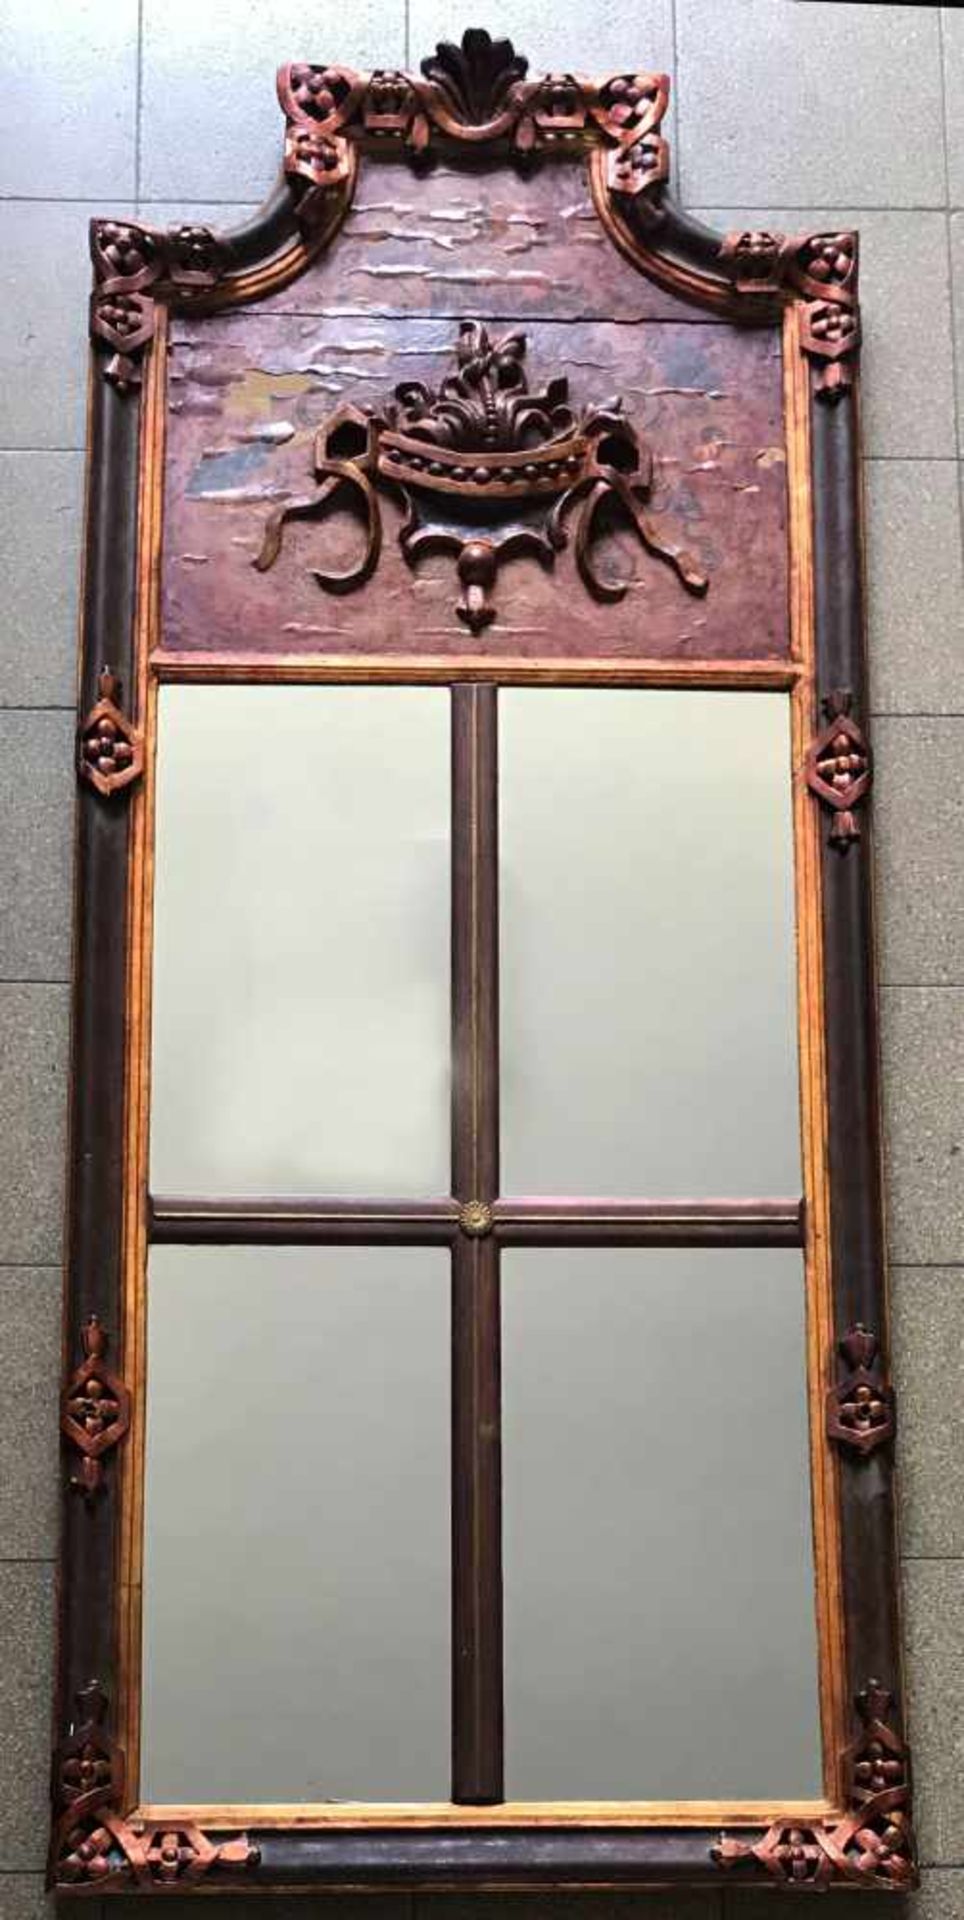 Spiegel, 19. Jh., groß, dekorativ, Holz, farbig gefasst, Altersspuren